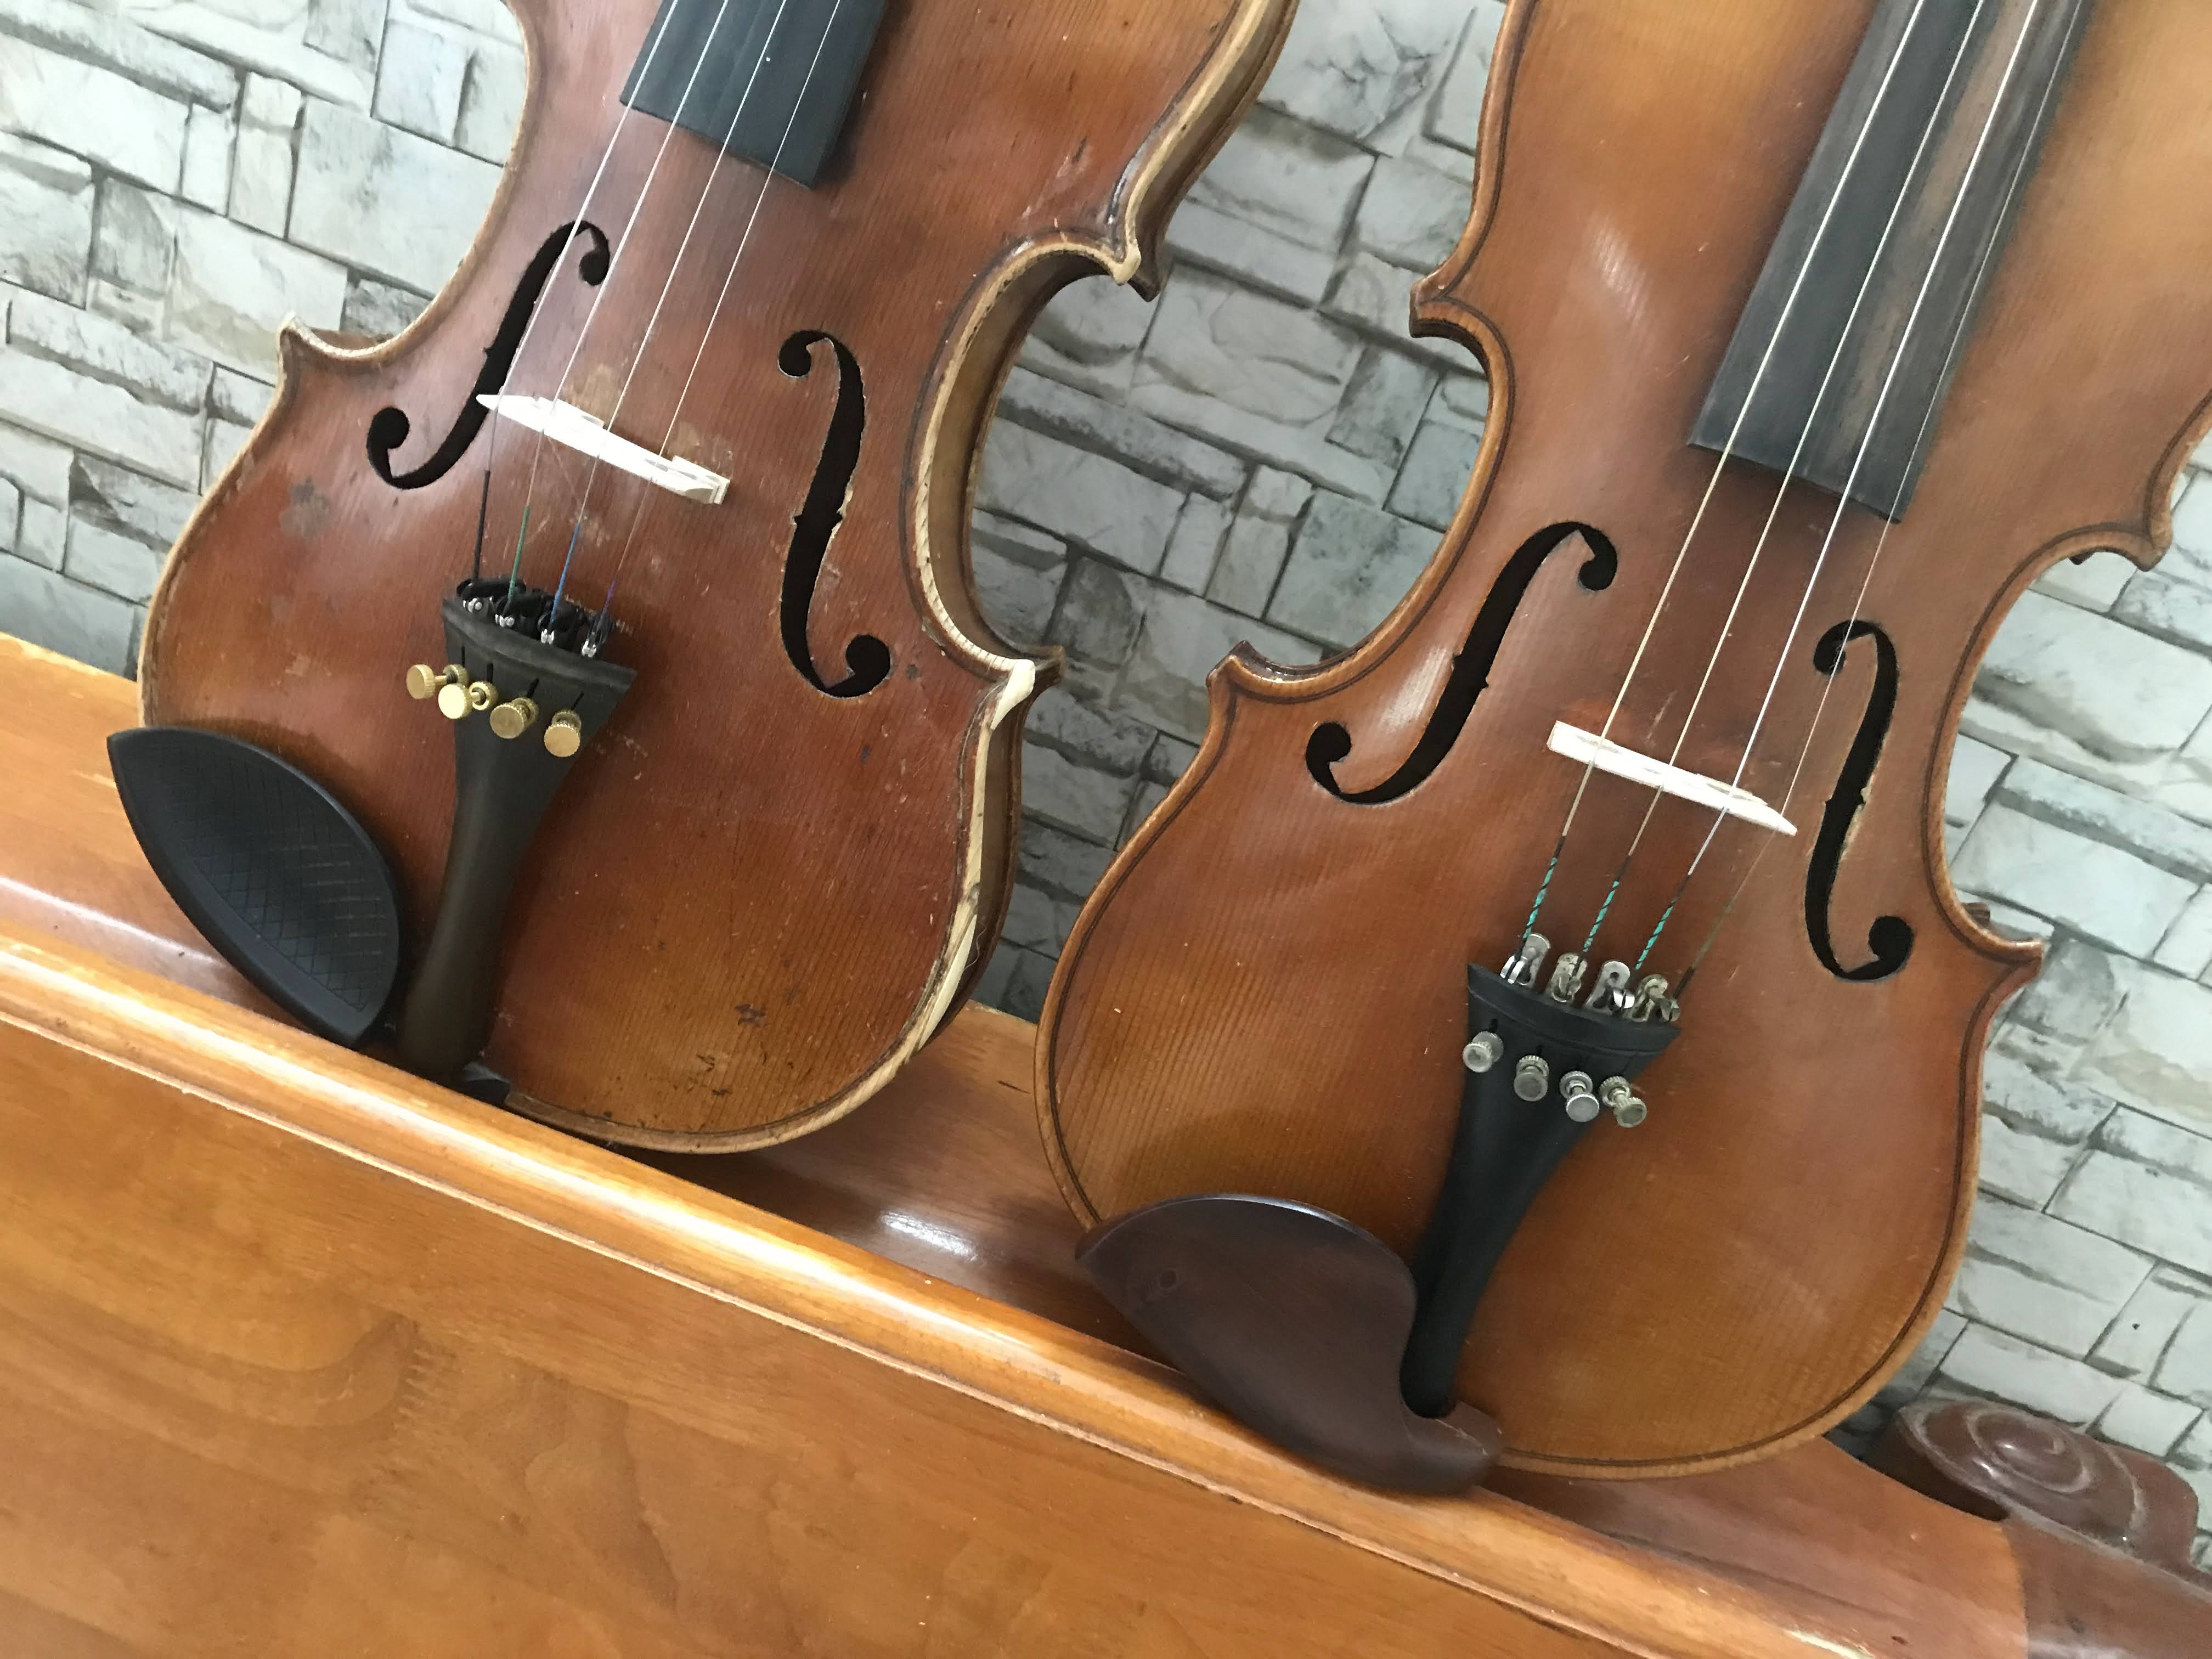 Đàn Violin Châu Âu - Của Pháp - Size 4/4 - Âm Thanh trầm ấm theo phong cách Pháp